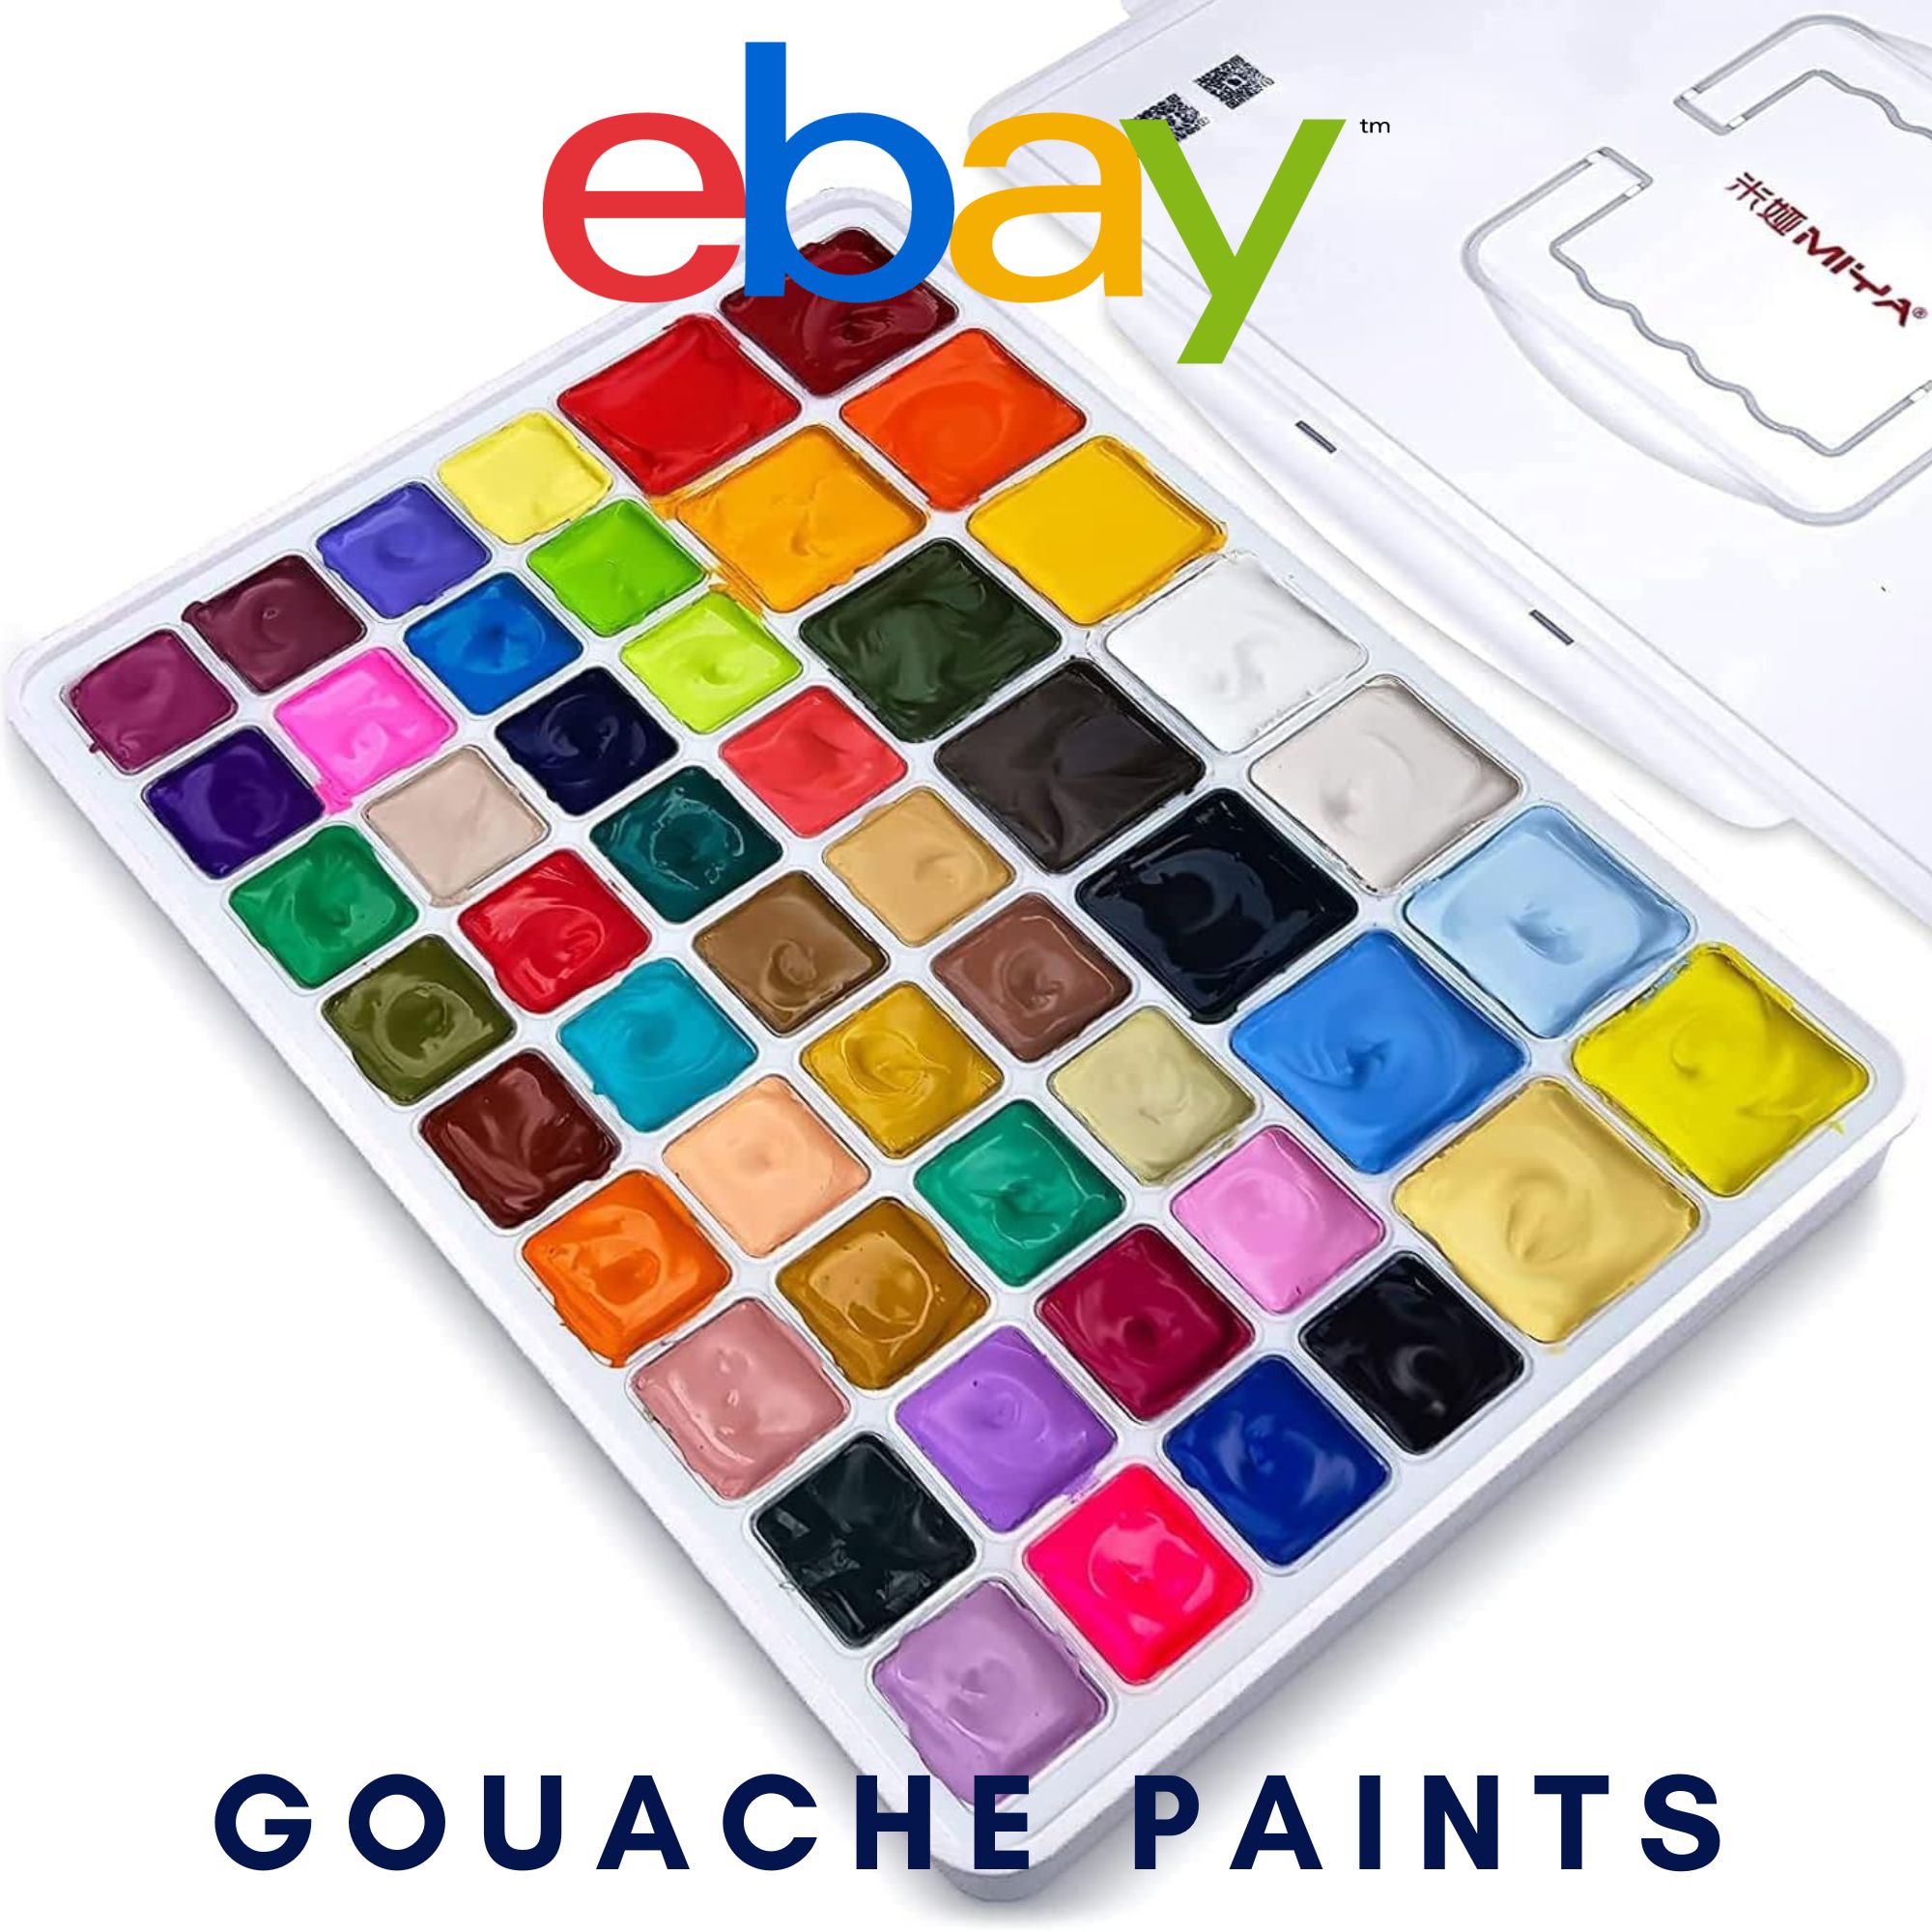  Gouache Paints - Discount Art Supplies